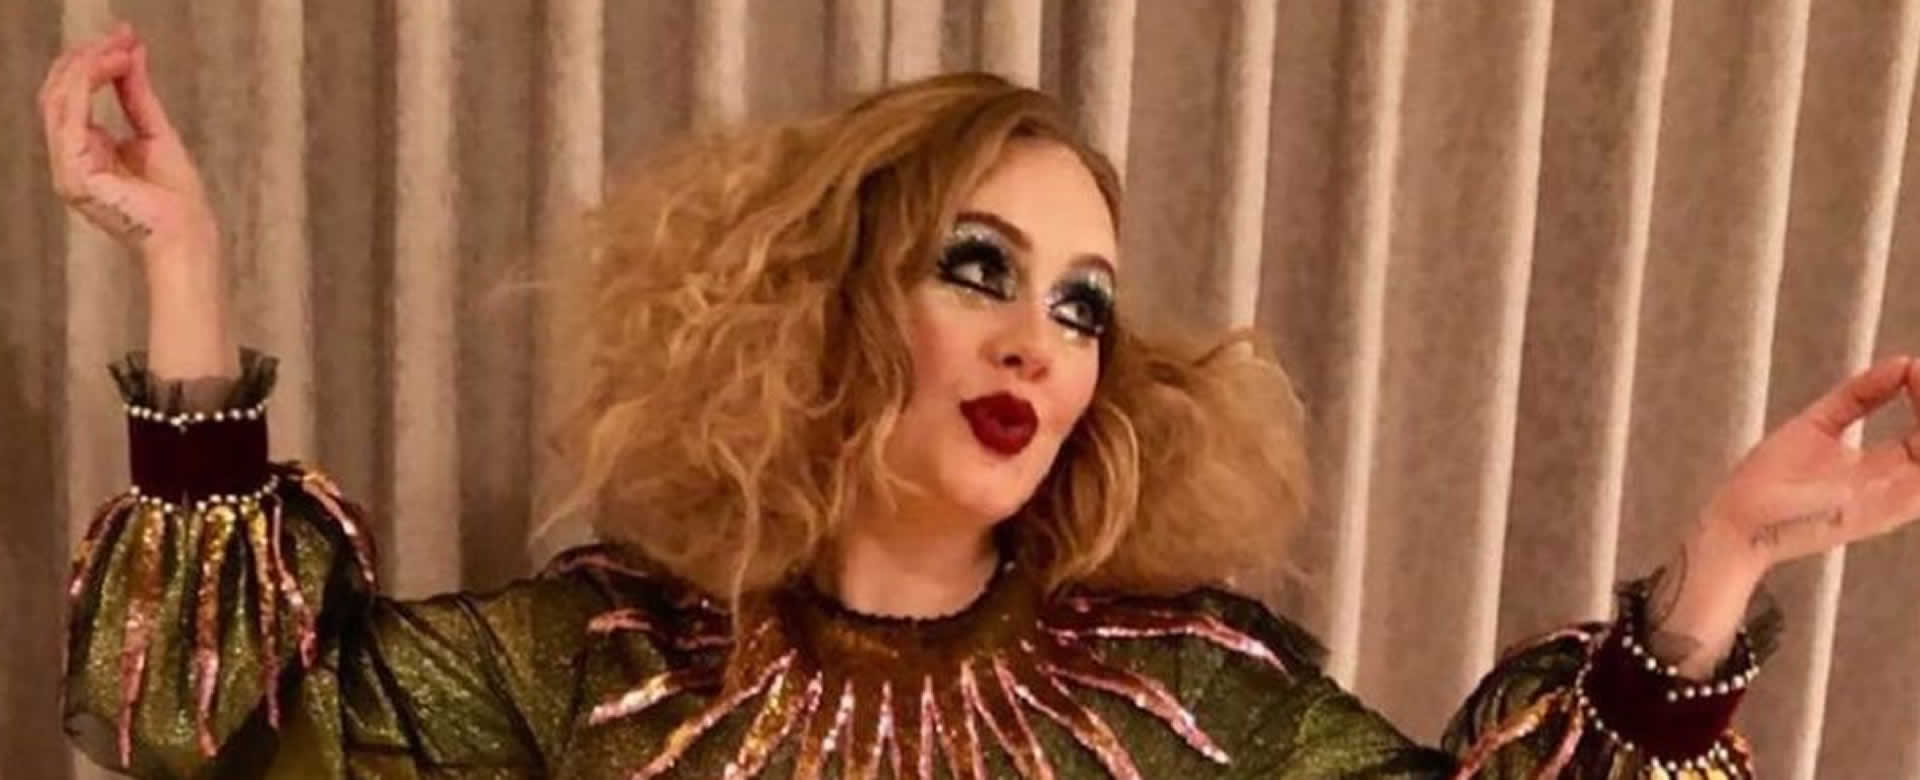 La diminuta cintura de Adele, impacto en la fiesta de Beyoncé